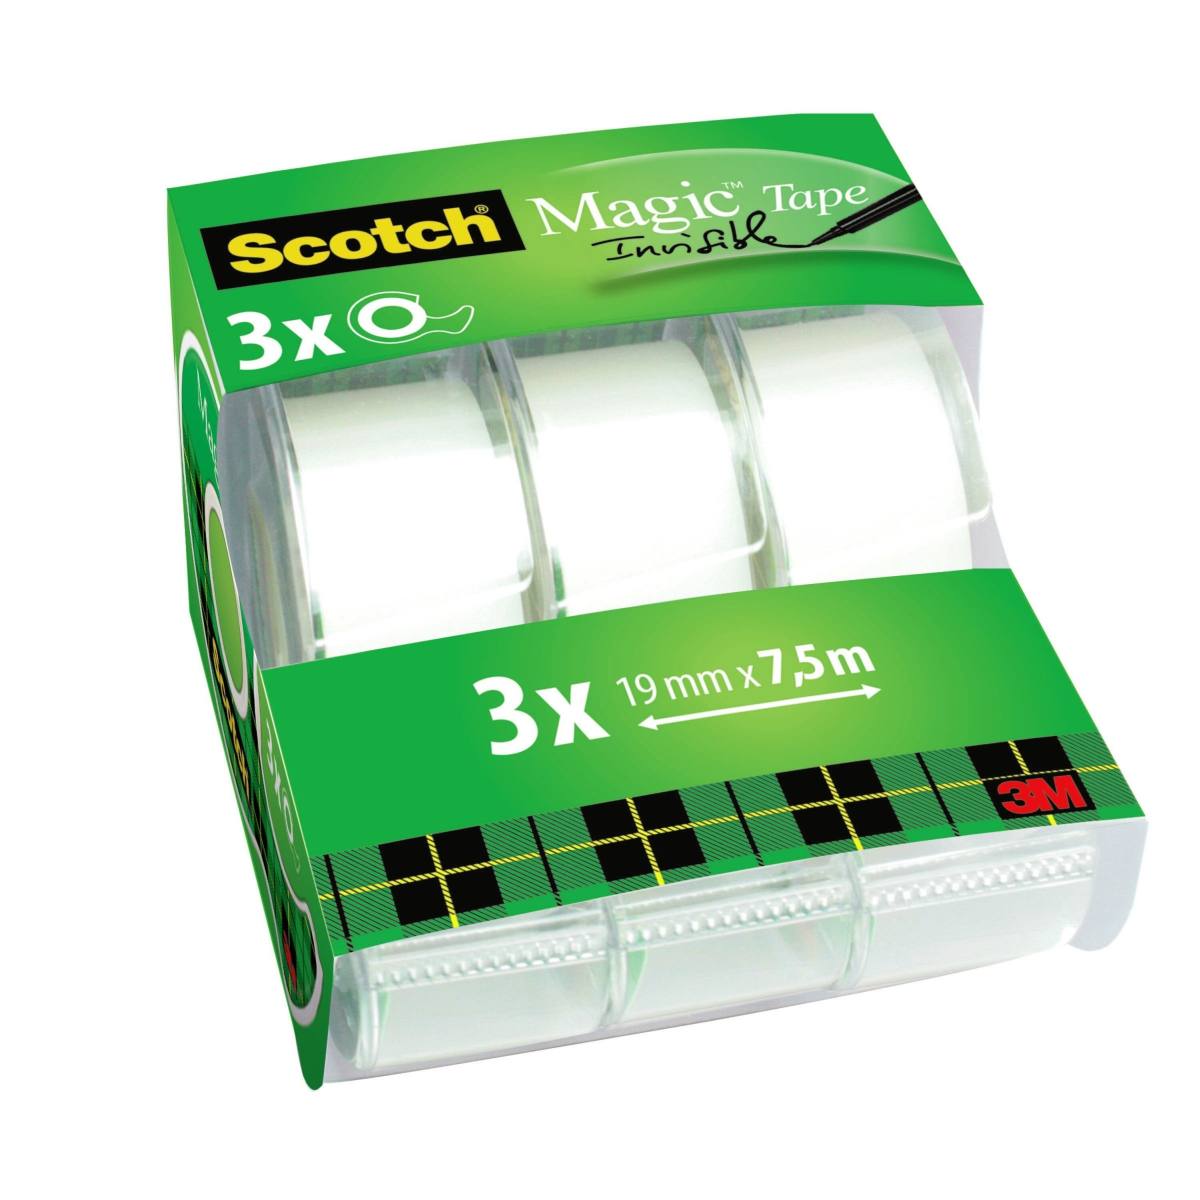 3M Scotch Magic Adhesive Tape Caddy Pack, 3 rotoli in dispenser manuali 19 mm x 7,5 m